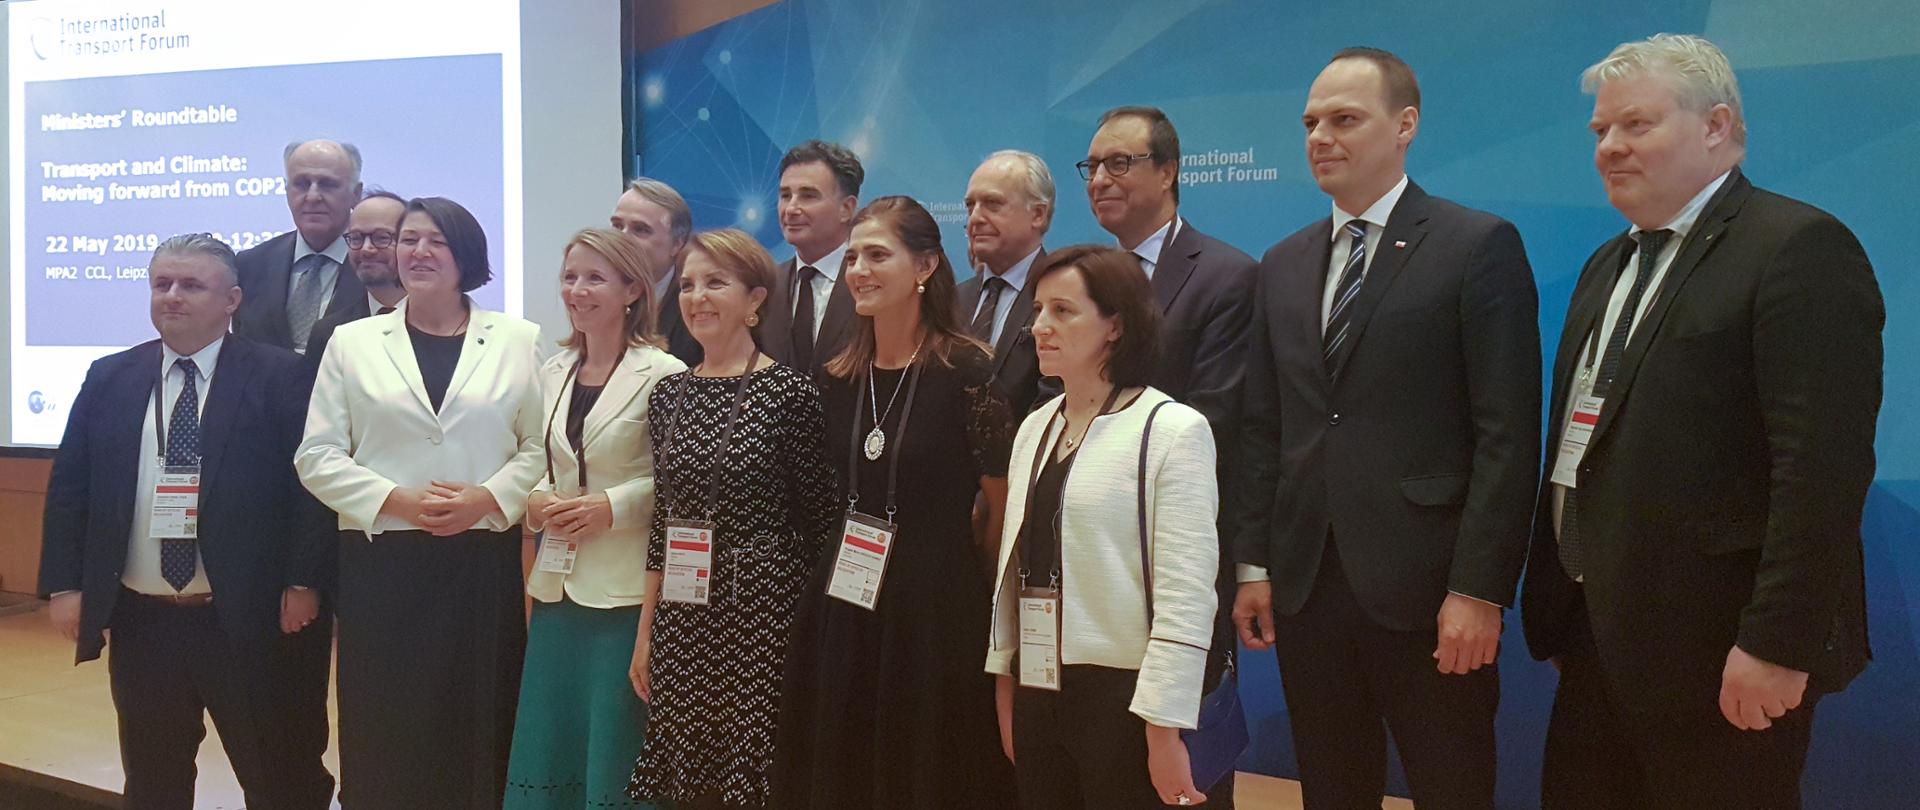 Szczyt Ministrów Międzynarodowego Forum Transportowego (ITF) - zdjęcie grupowe